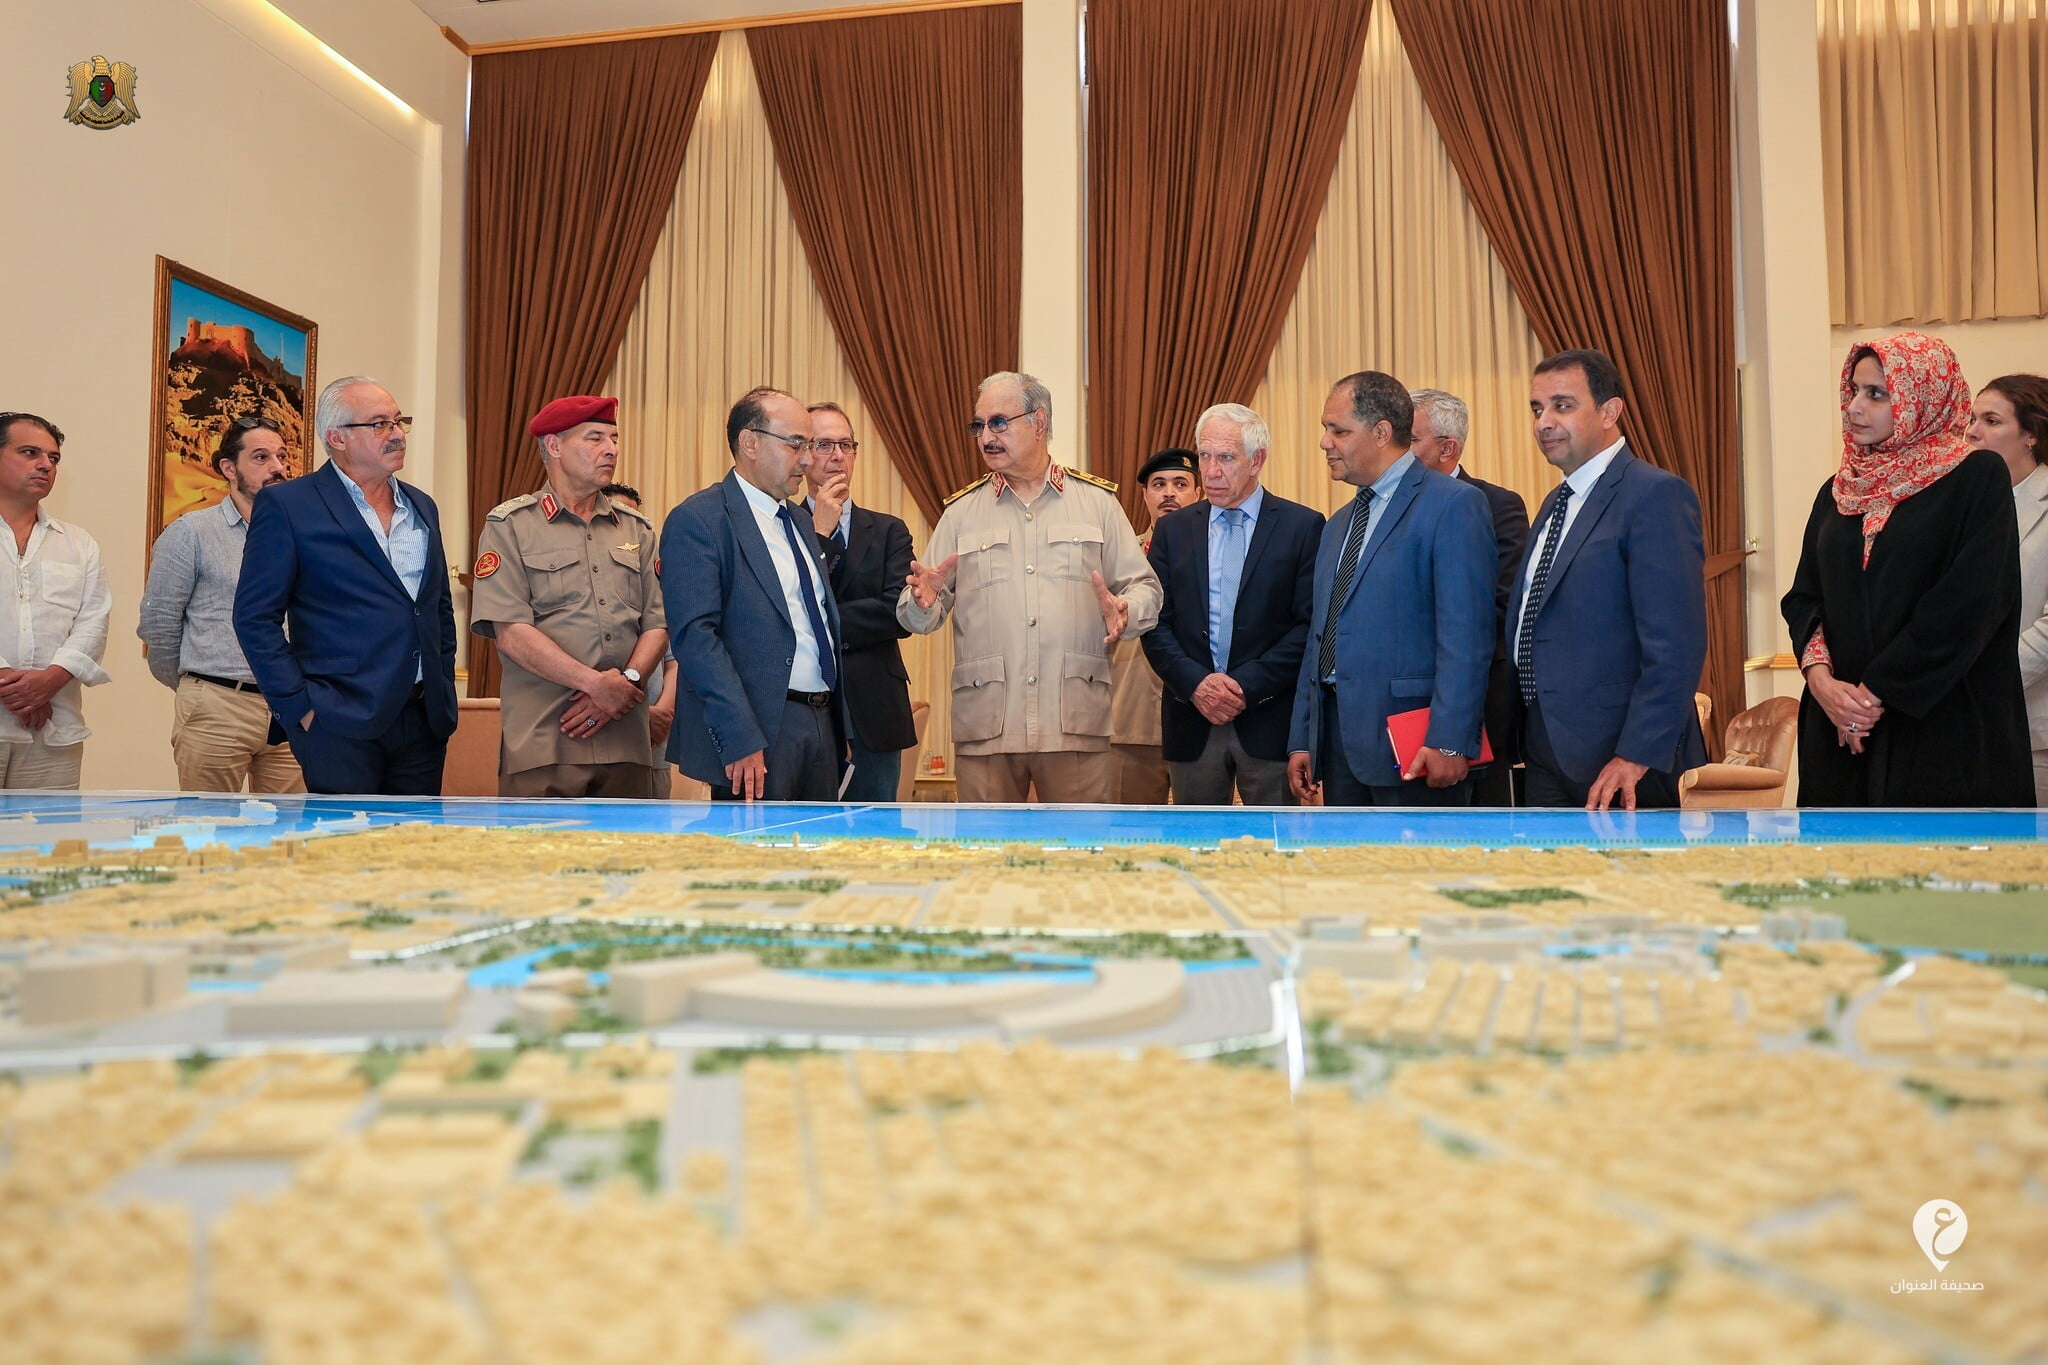 حفتر يؤكد على ضرورة تنفيذ المُخطط الحضاري لمدينة بنغازي وفقاً للشروط الهندسية والفنية - 355140151 590366496609313 8053818088351108728 n